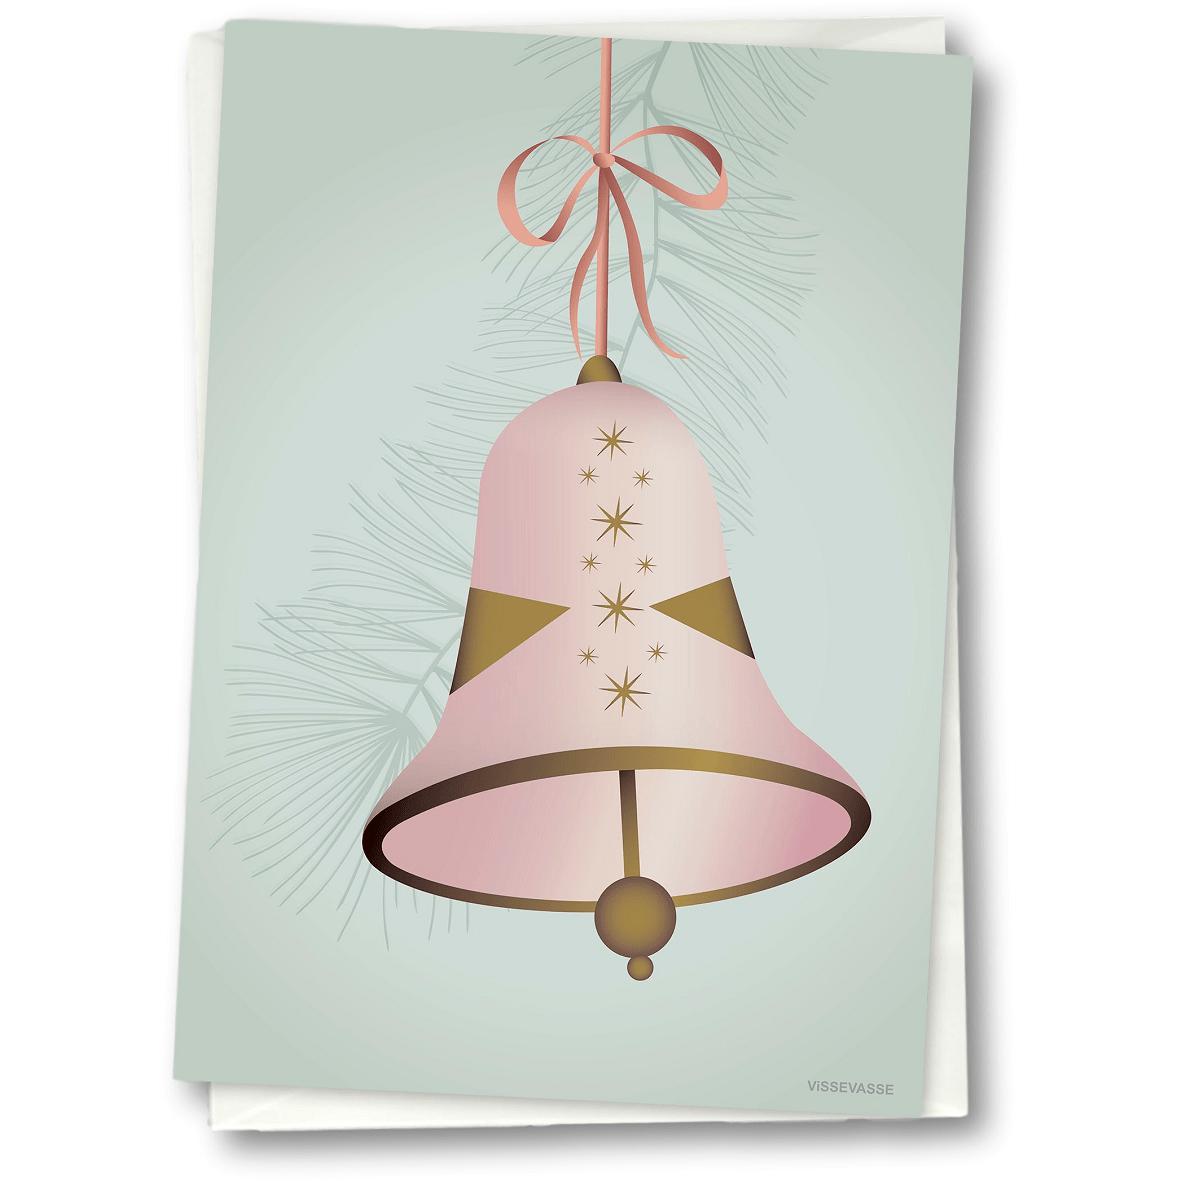 Vissevasse juleklokke lykønskningskort 15 x21 cm, lyserød